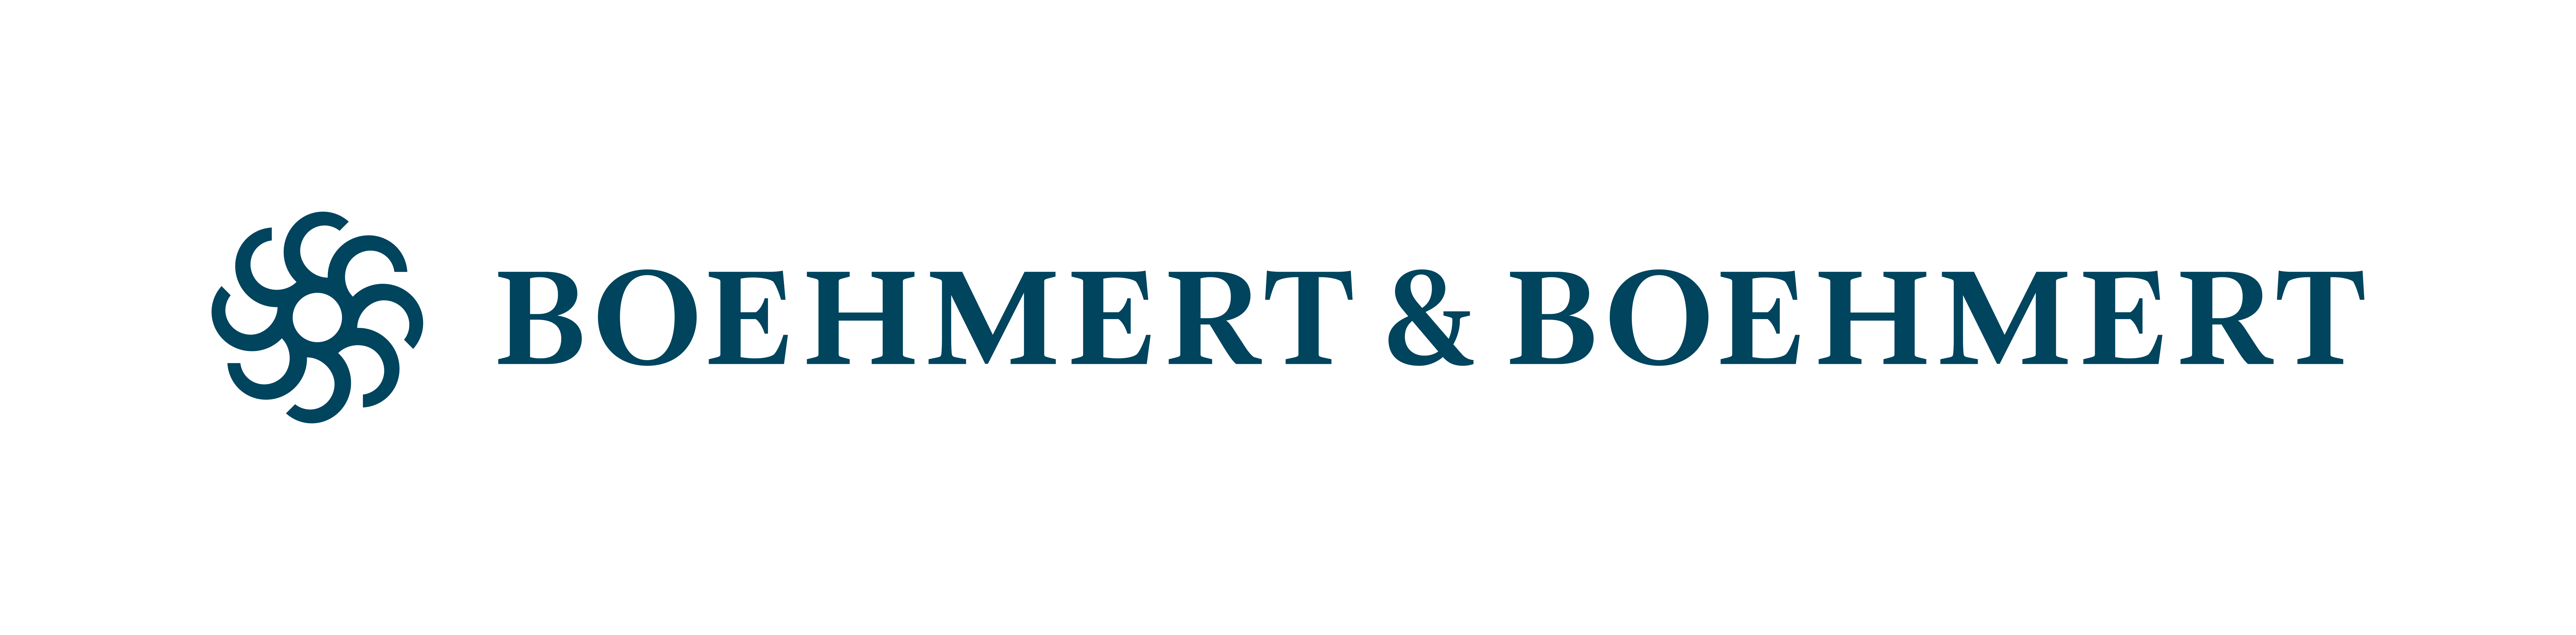 Boehmert & Boehmert company logo